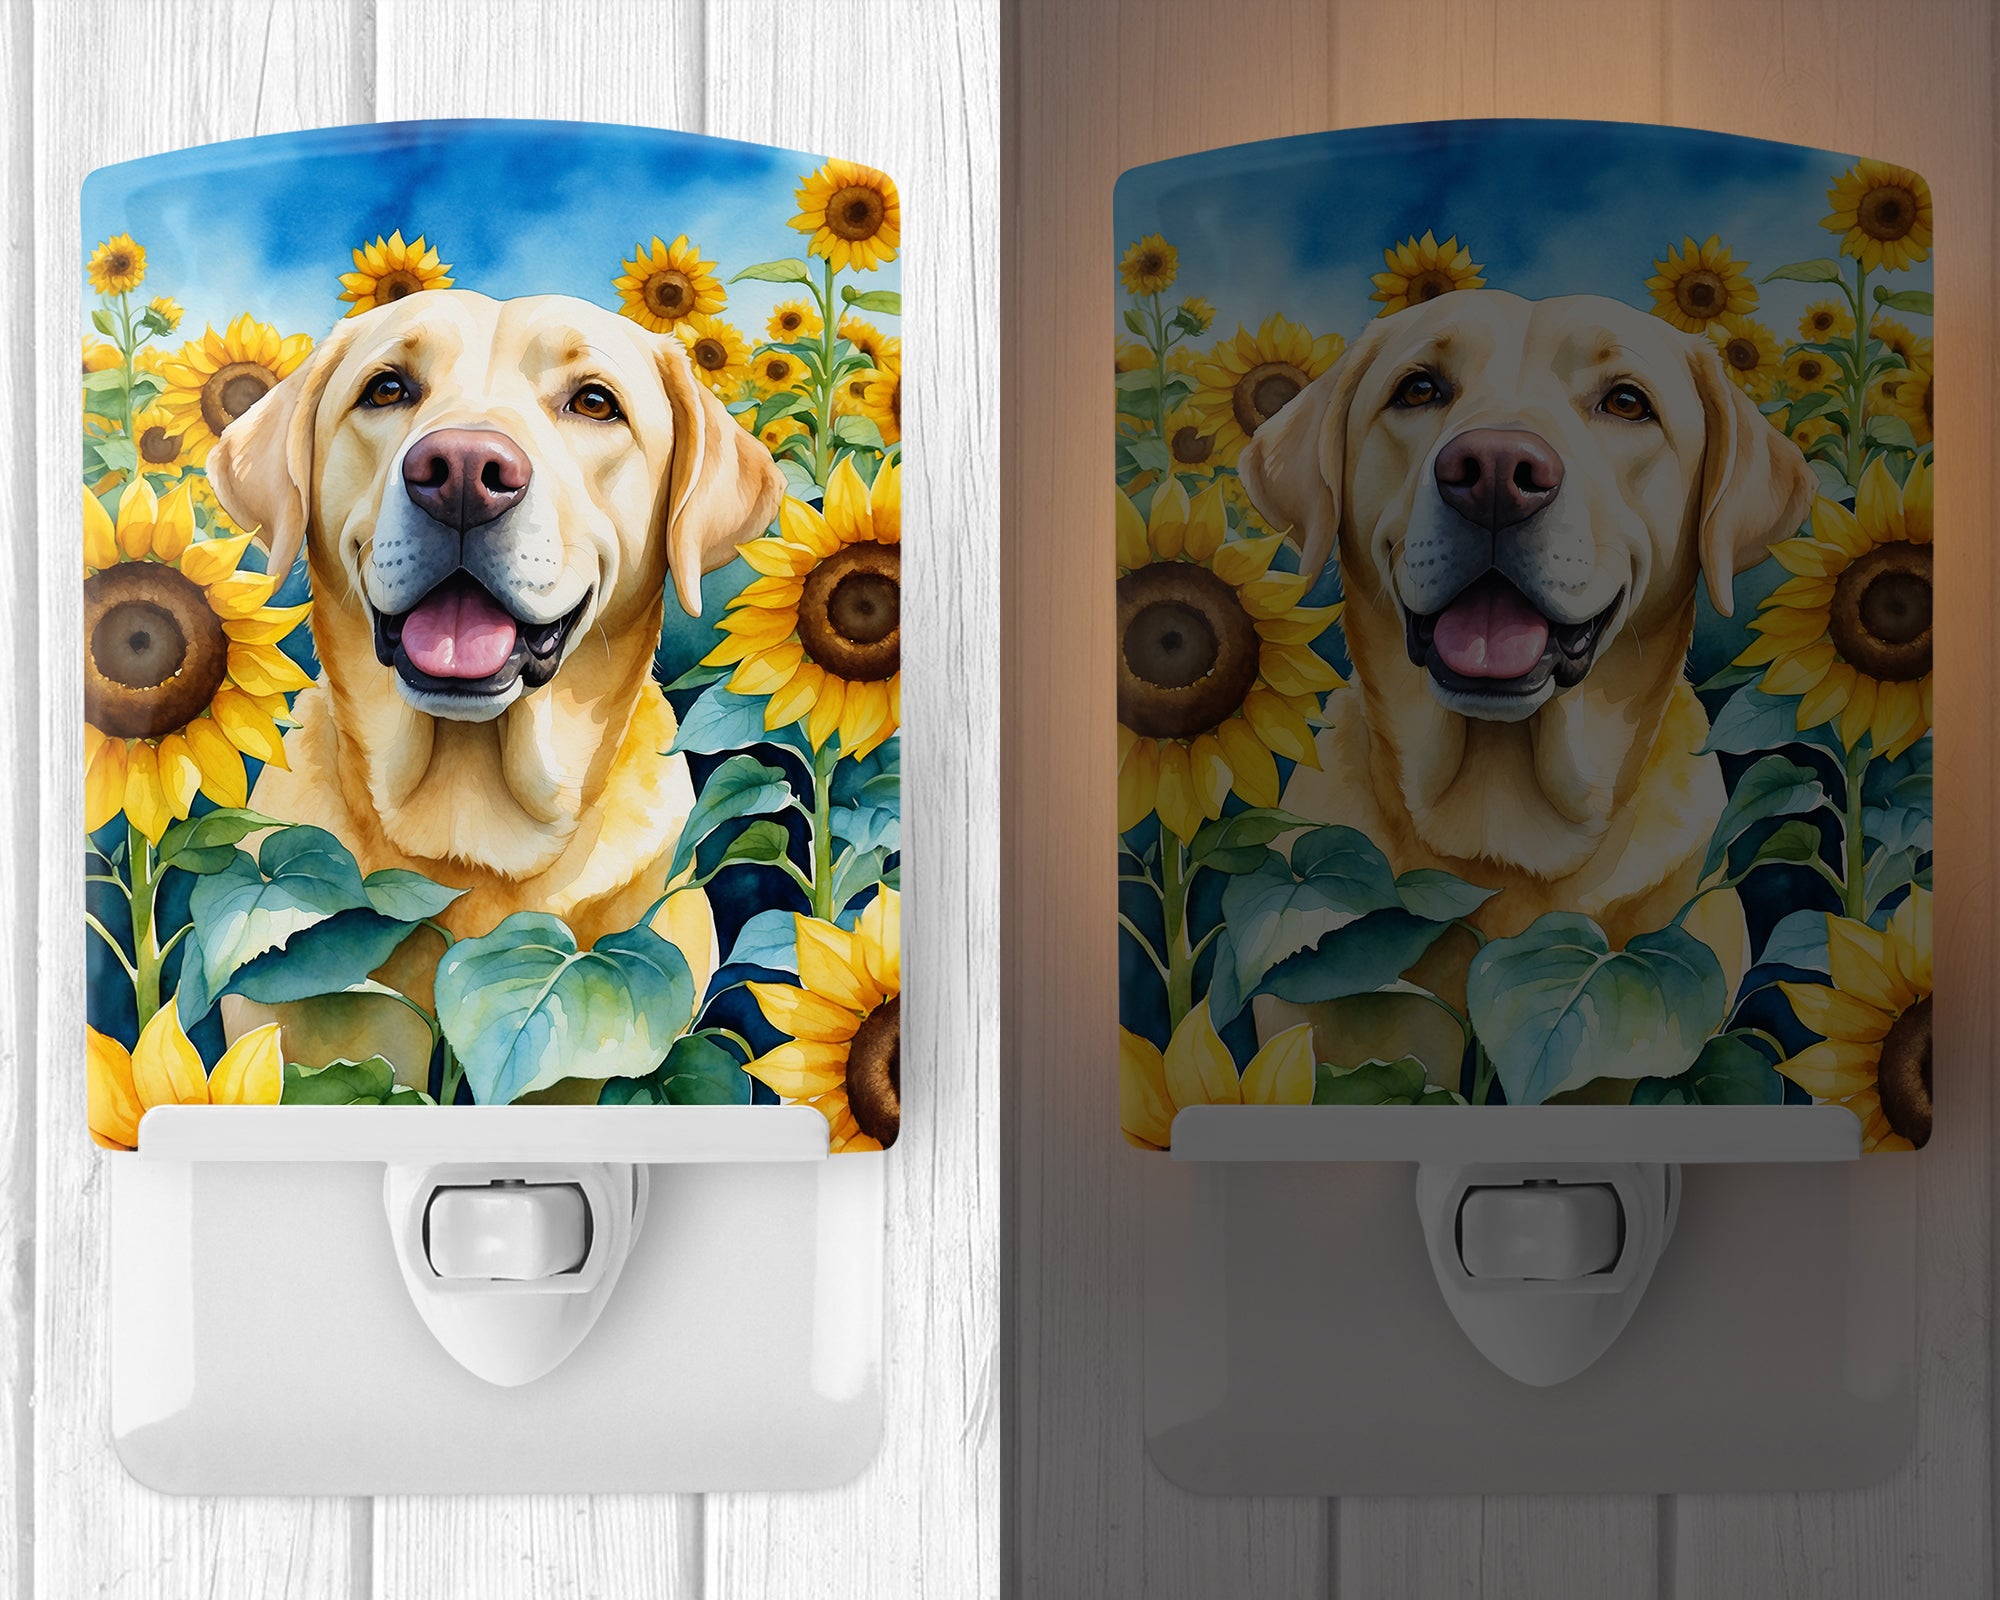 Buy this Labrador Retriever in Sunflowers Ceramic Night Light